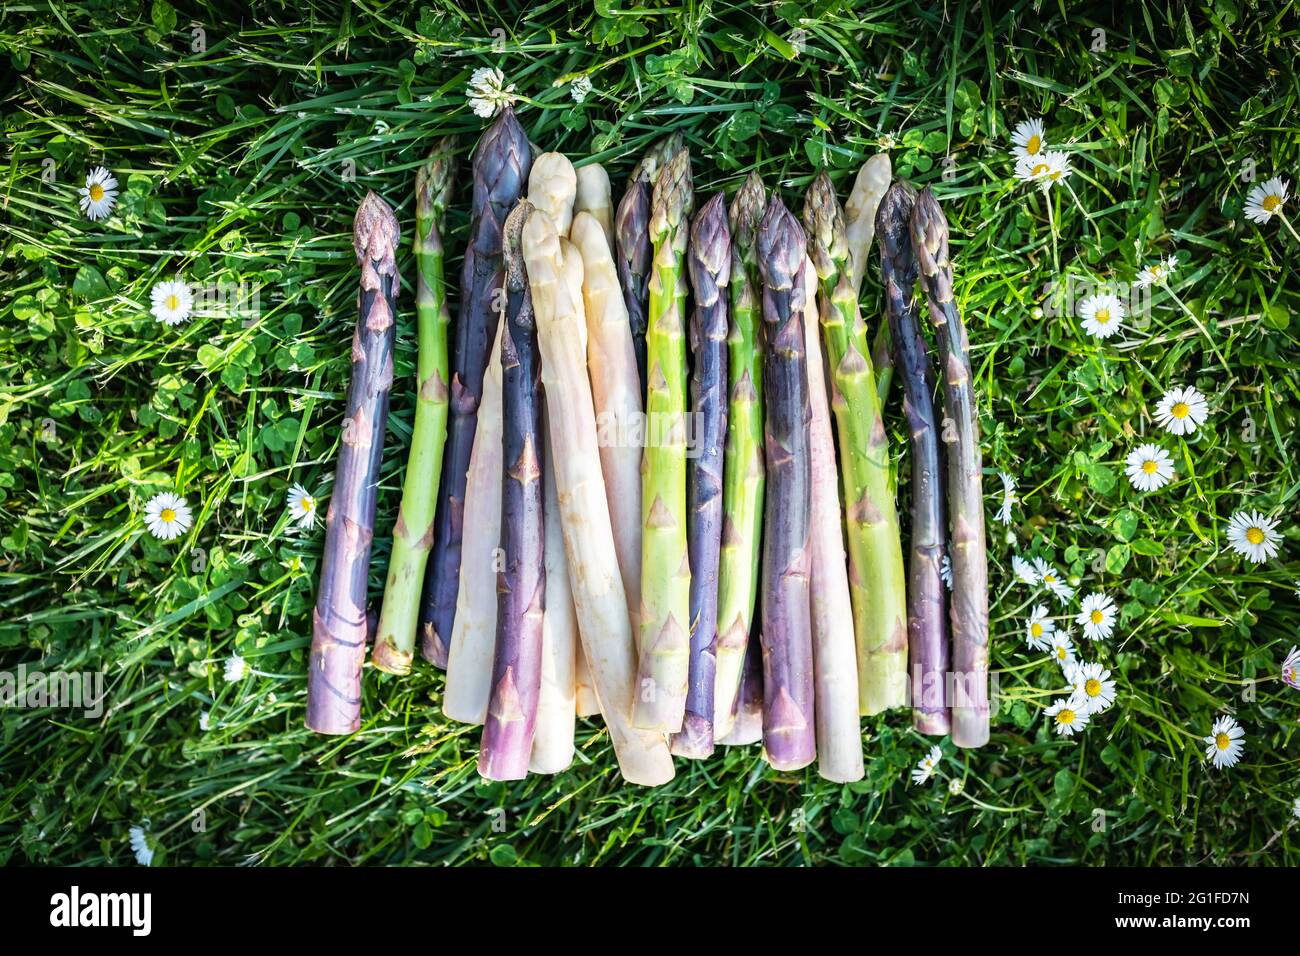 Spargel sprießt auf grünem Gras mit Blumen im Garten. Frische grüne, violette und weiße Spargelsprossen. Food Fotografie Hintergrund Stockfoto